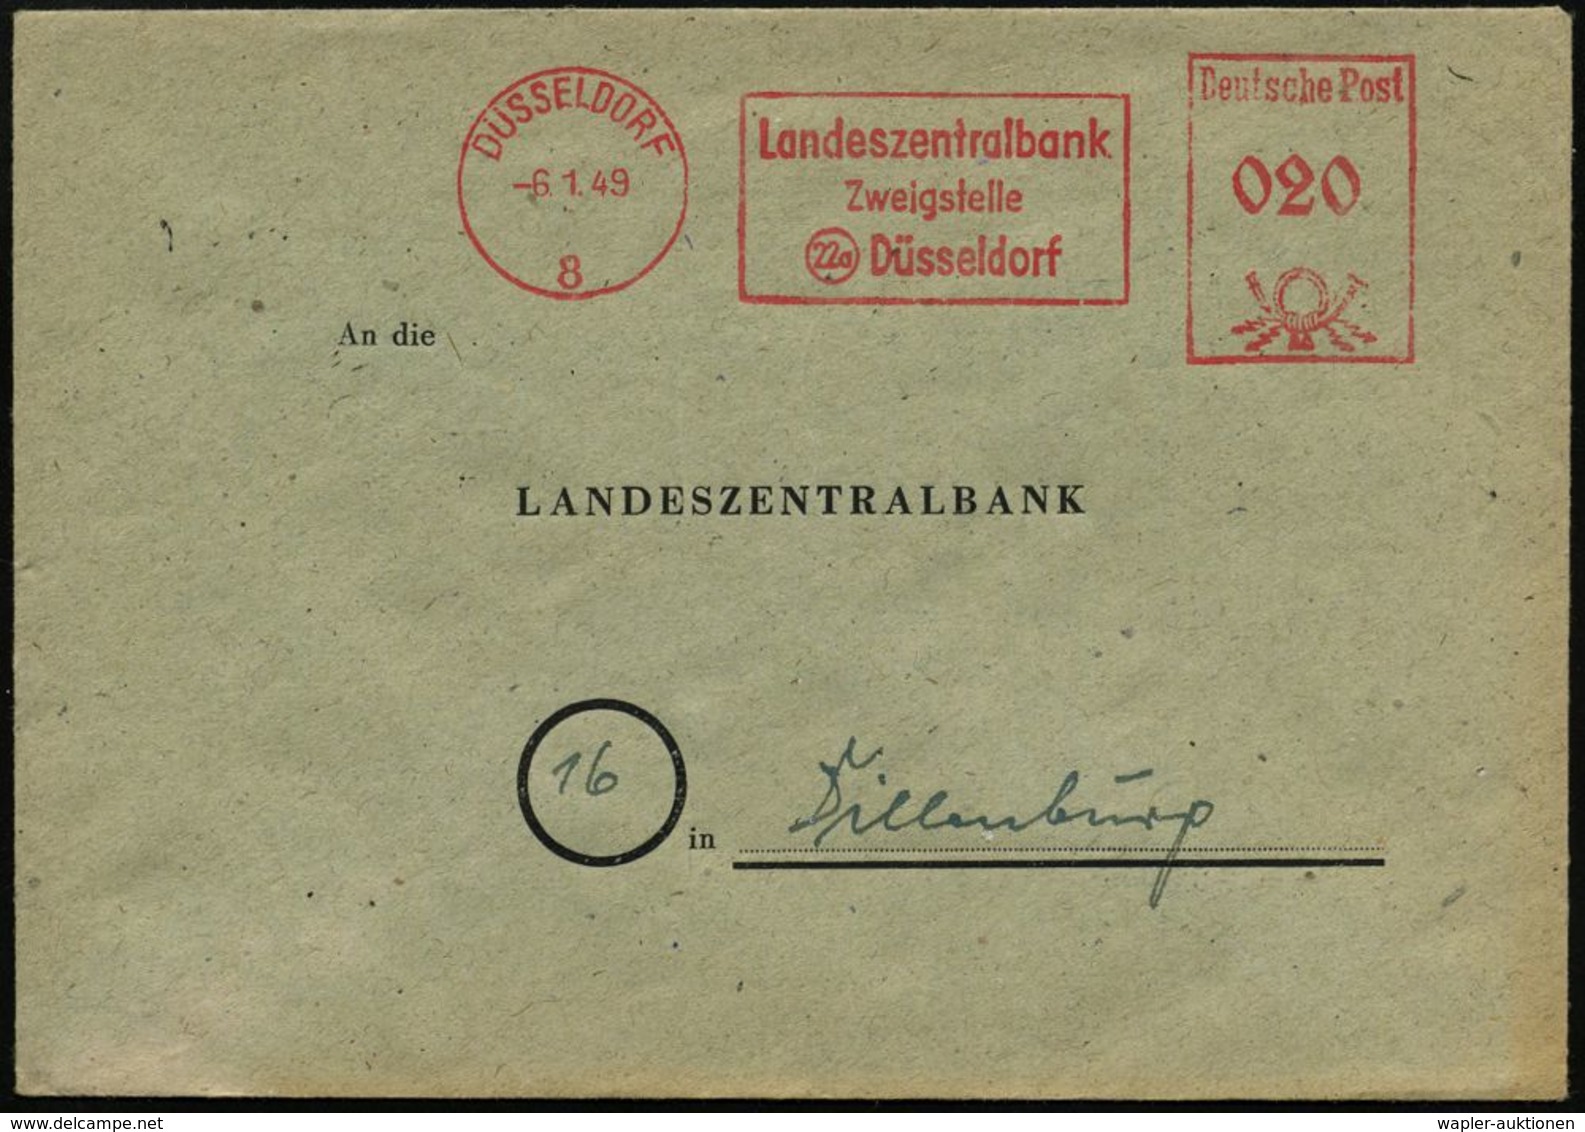 STAATSBANKEN / REICHSBANK / BUNDESBANK : DÜSSELDORF/ 8/ Landeszentralbank/ Zweigstelle 1949 (6.1.) AFS (nach Währungsref - Non Classificati